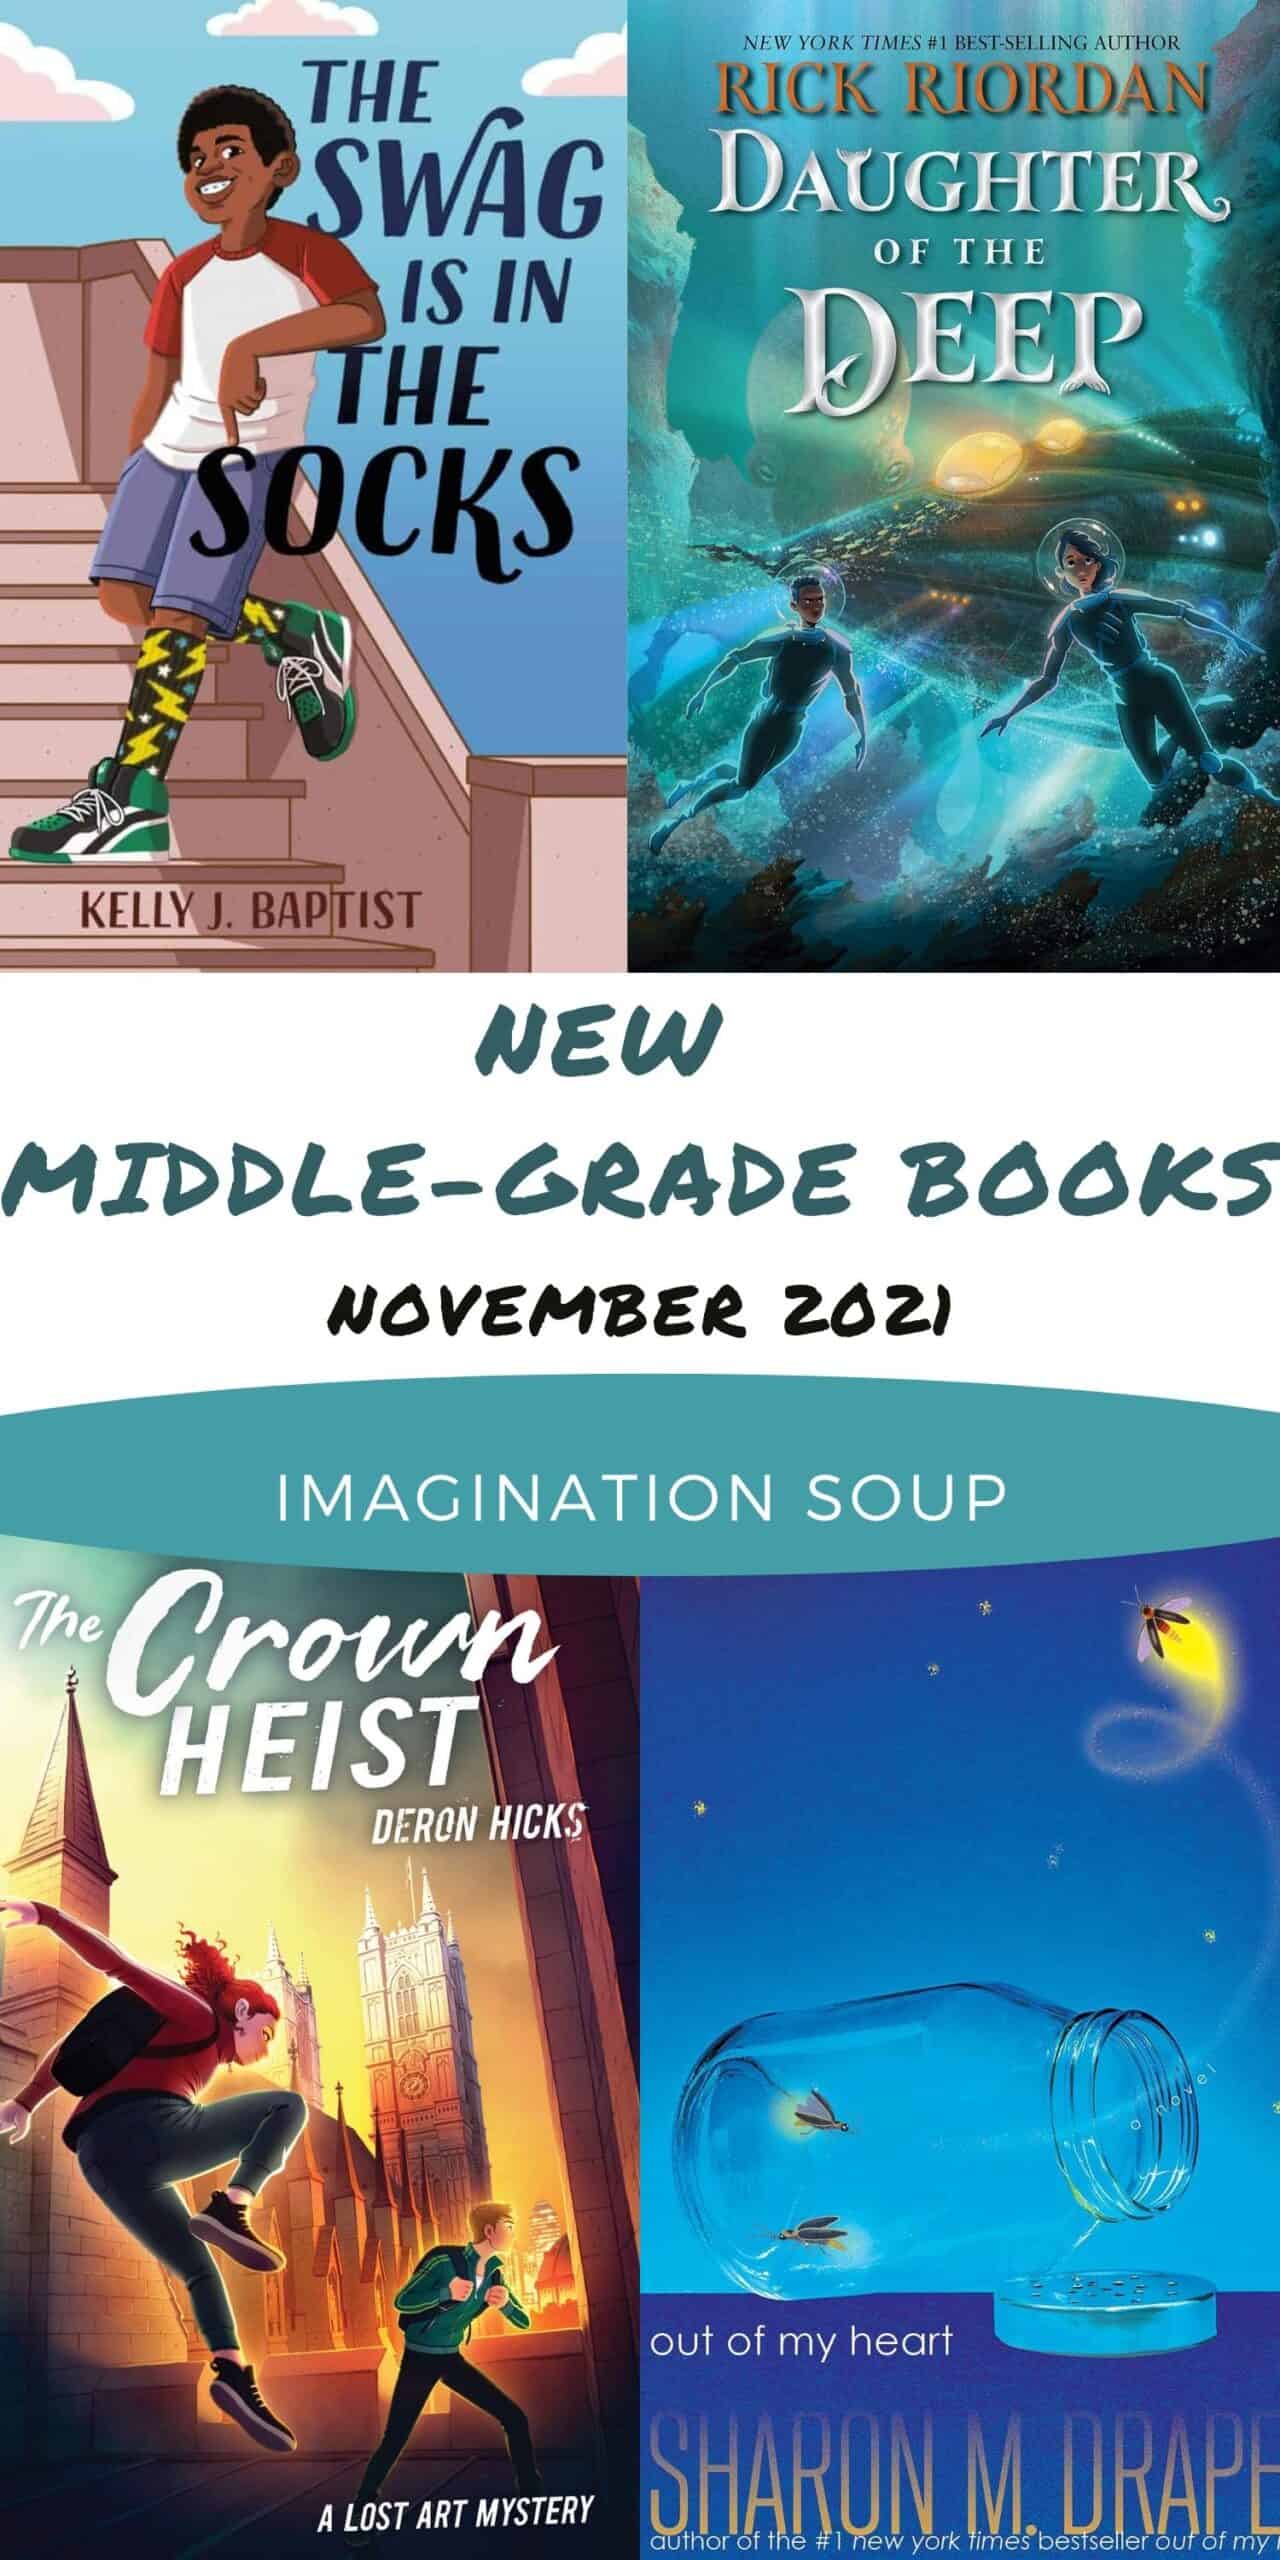 New Middle Grade Books, November 2021